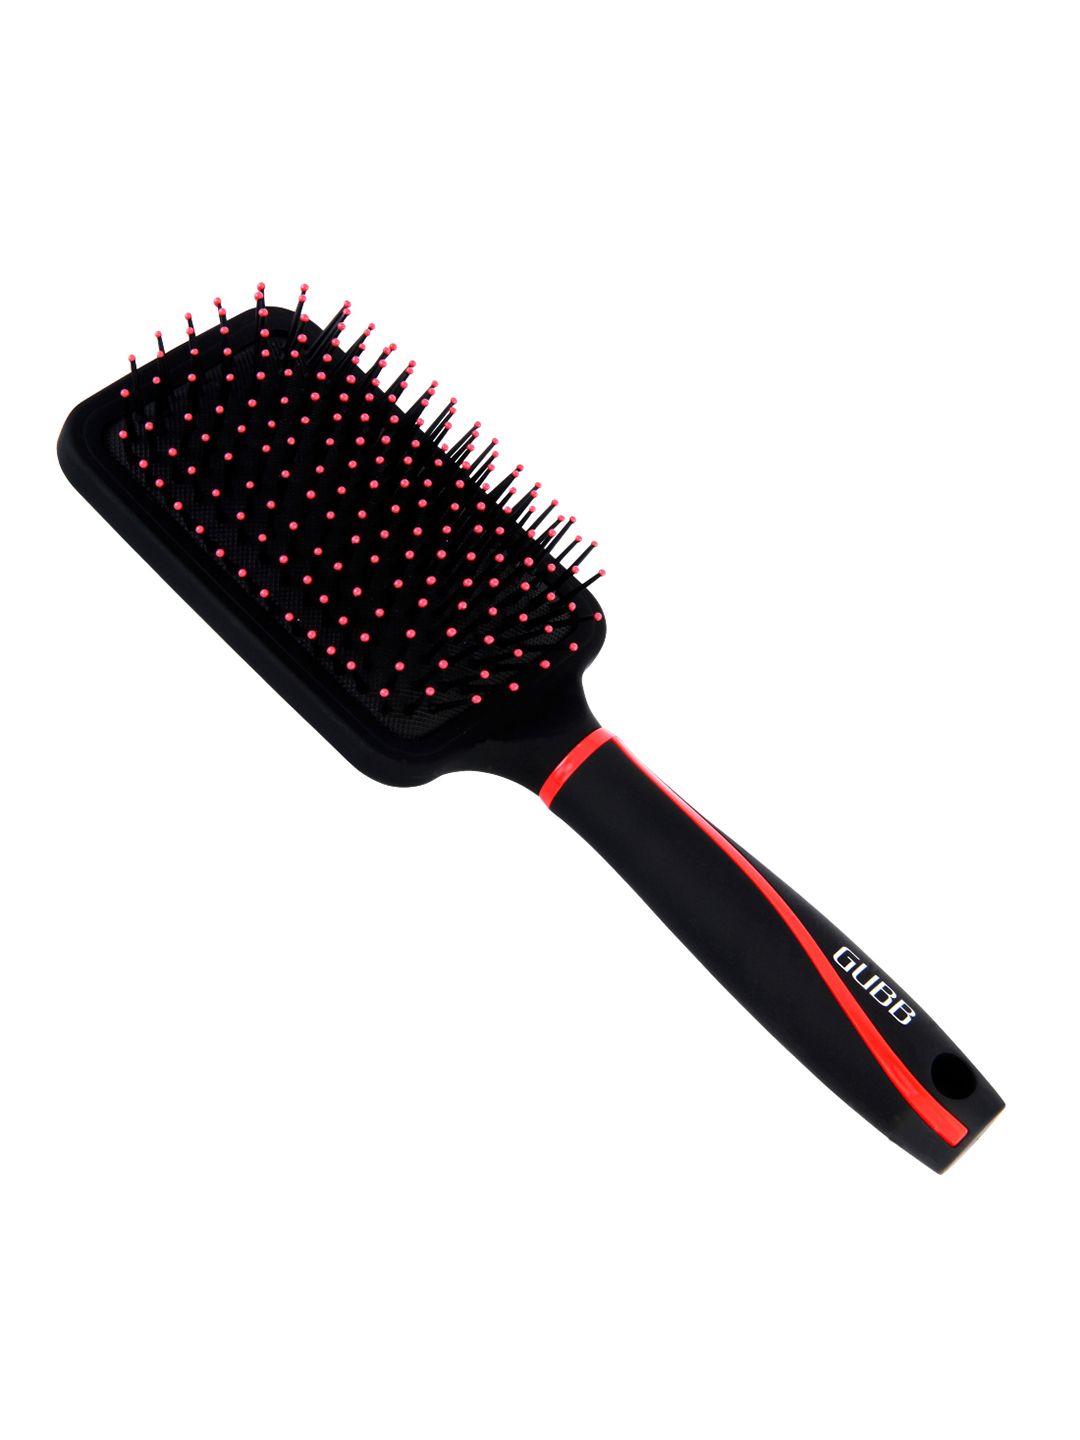 GUBB Black Paddle Hair Brush, Large (Vogue Range) Price in India